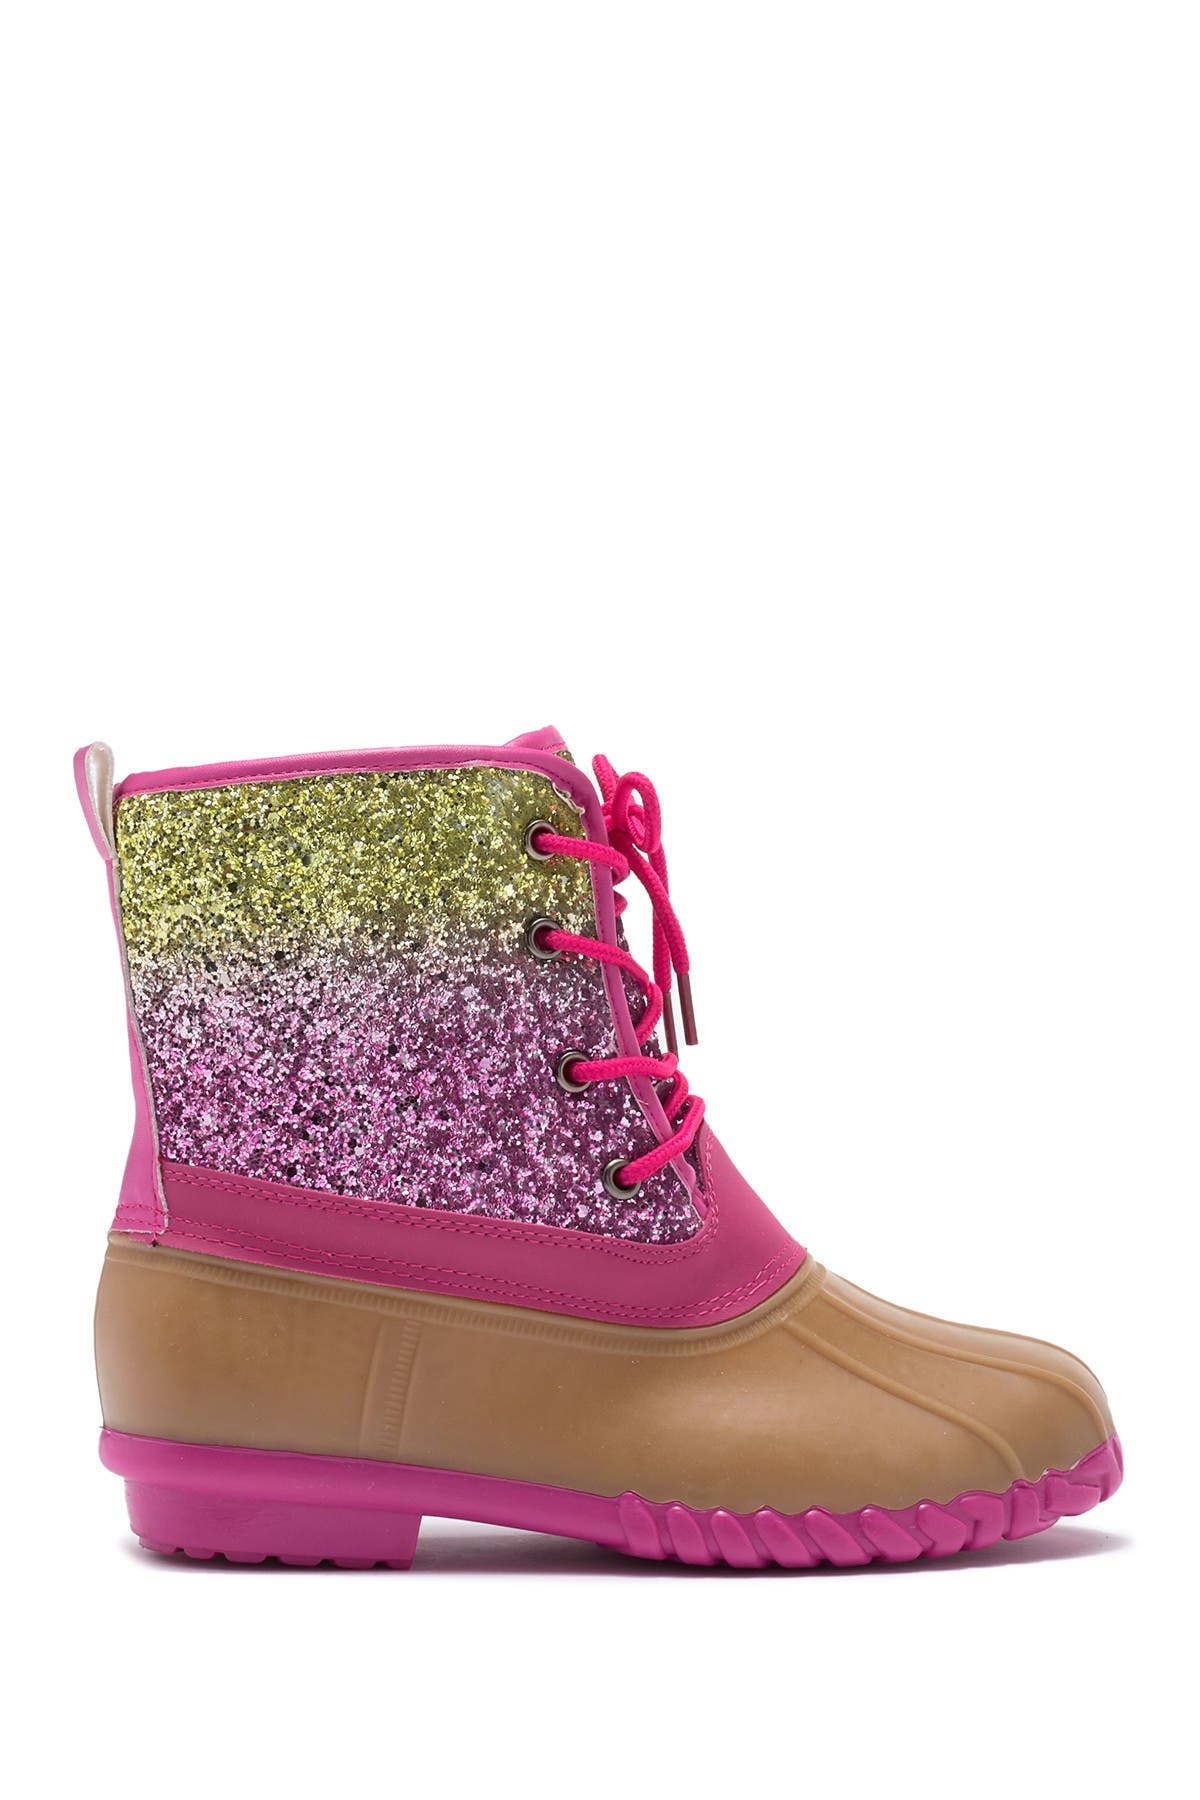 Pink \u0026 Gold Glitter Duck Boot 